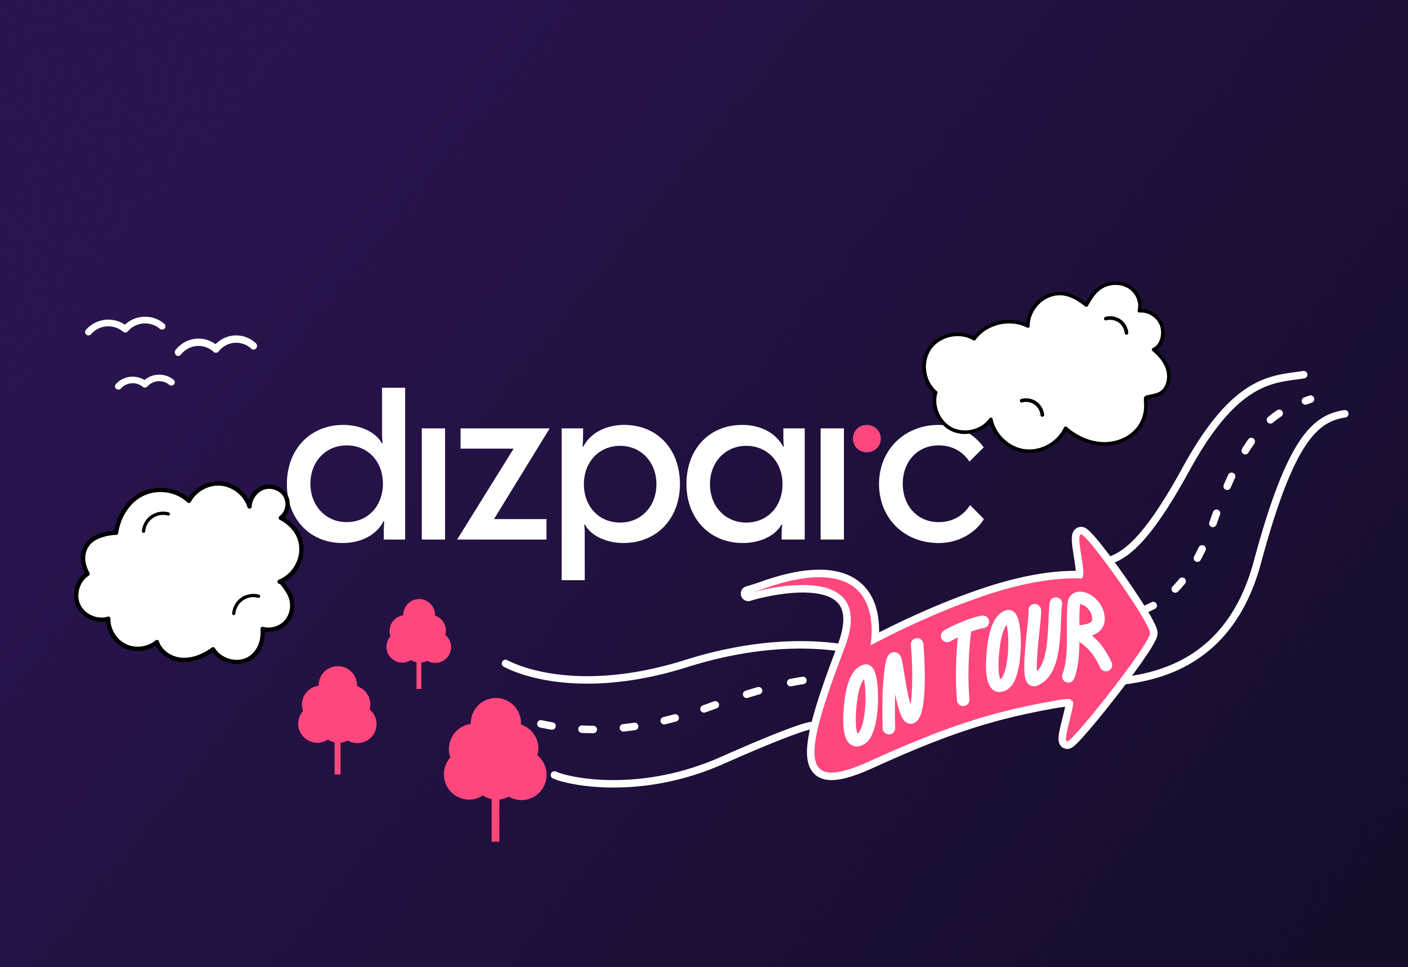 dizparc on tour